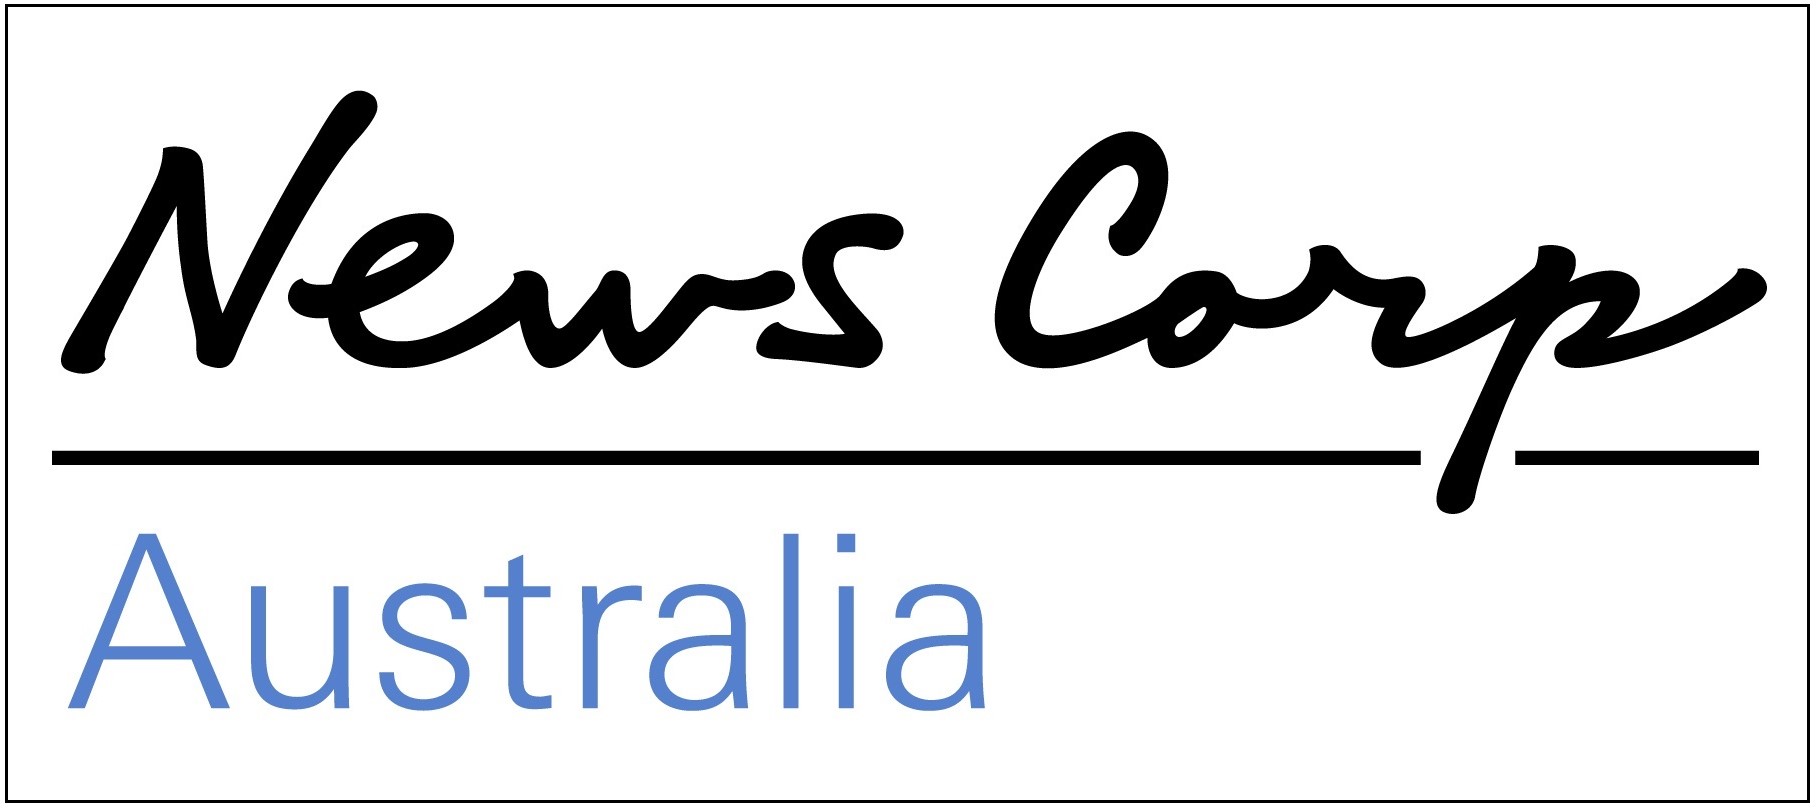 News Corp Australia State of Origin delivery fiasco